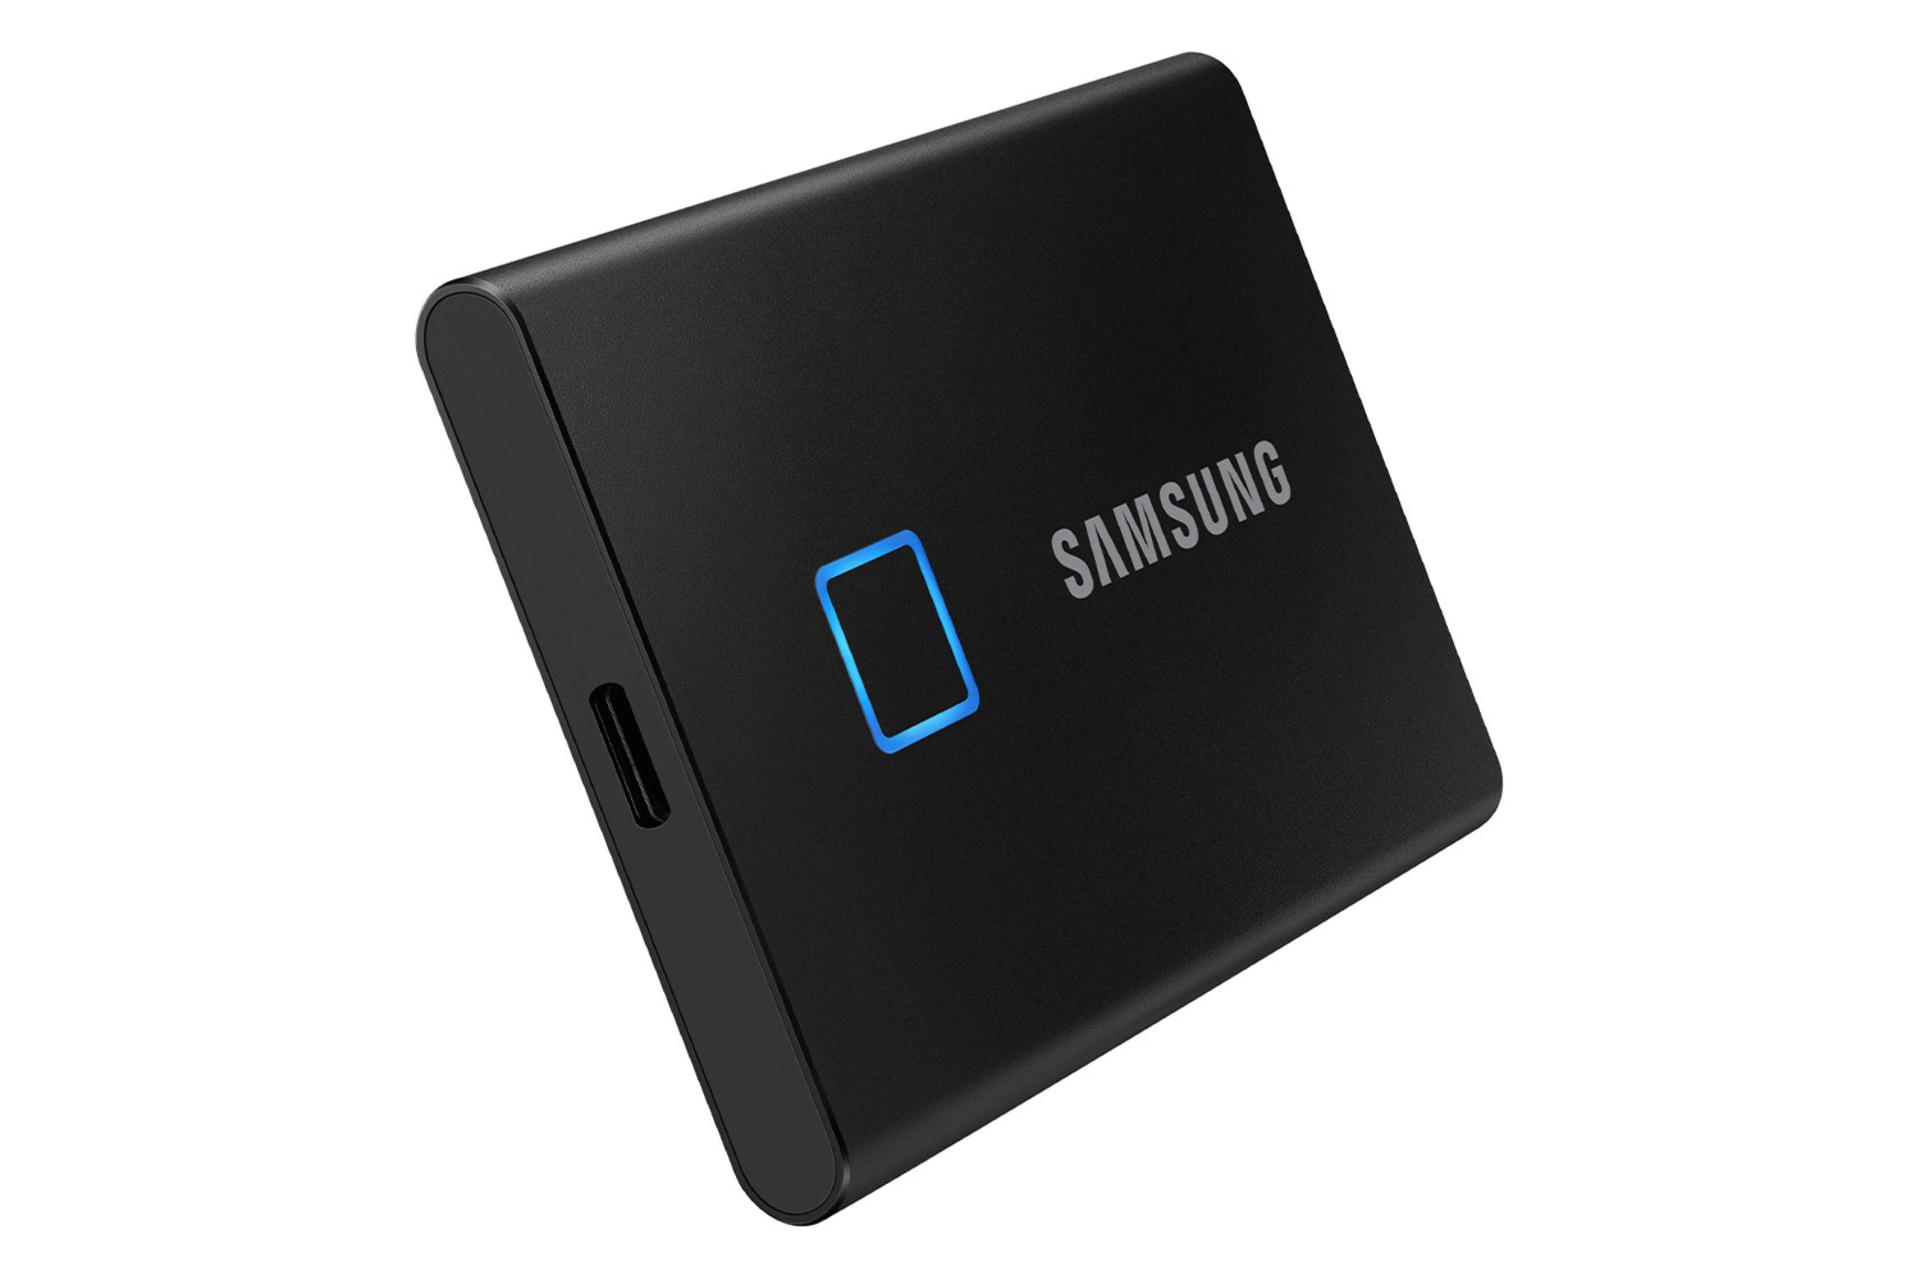 مرجع متخصصين ايران Samsung T7 Touch 500GB / سامسونگ T7 Touch ظرفيت 500 گيگابايت